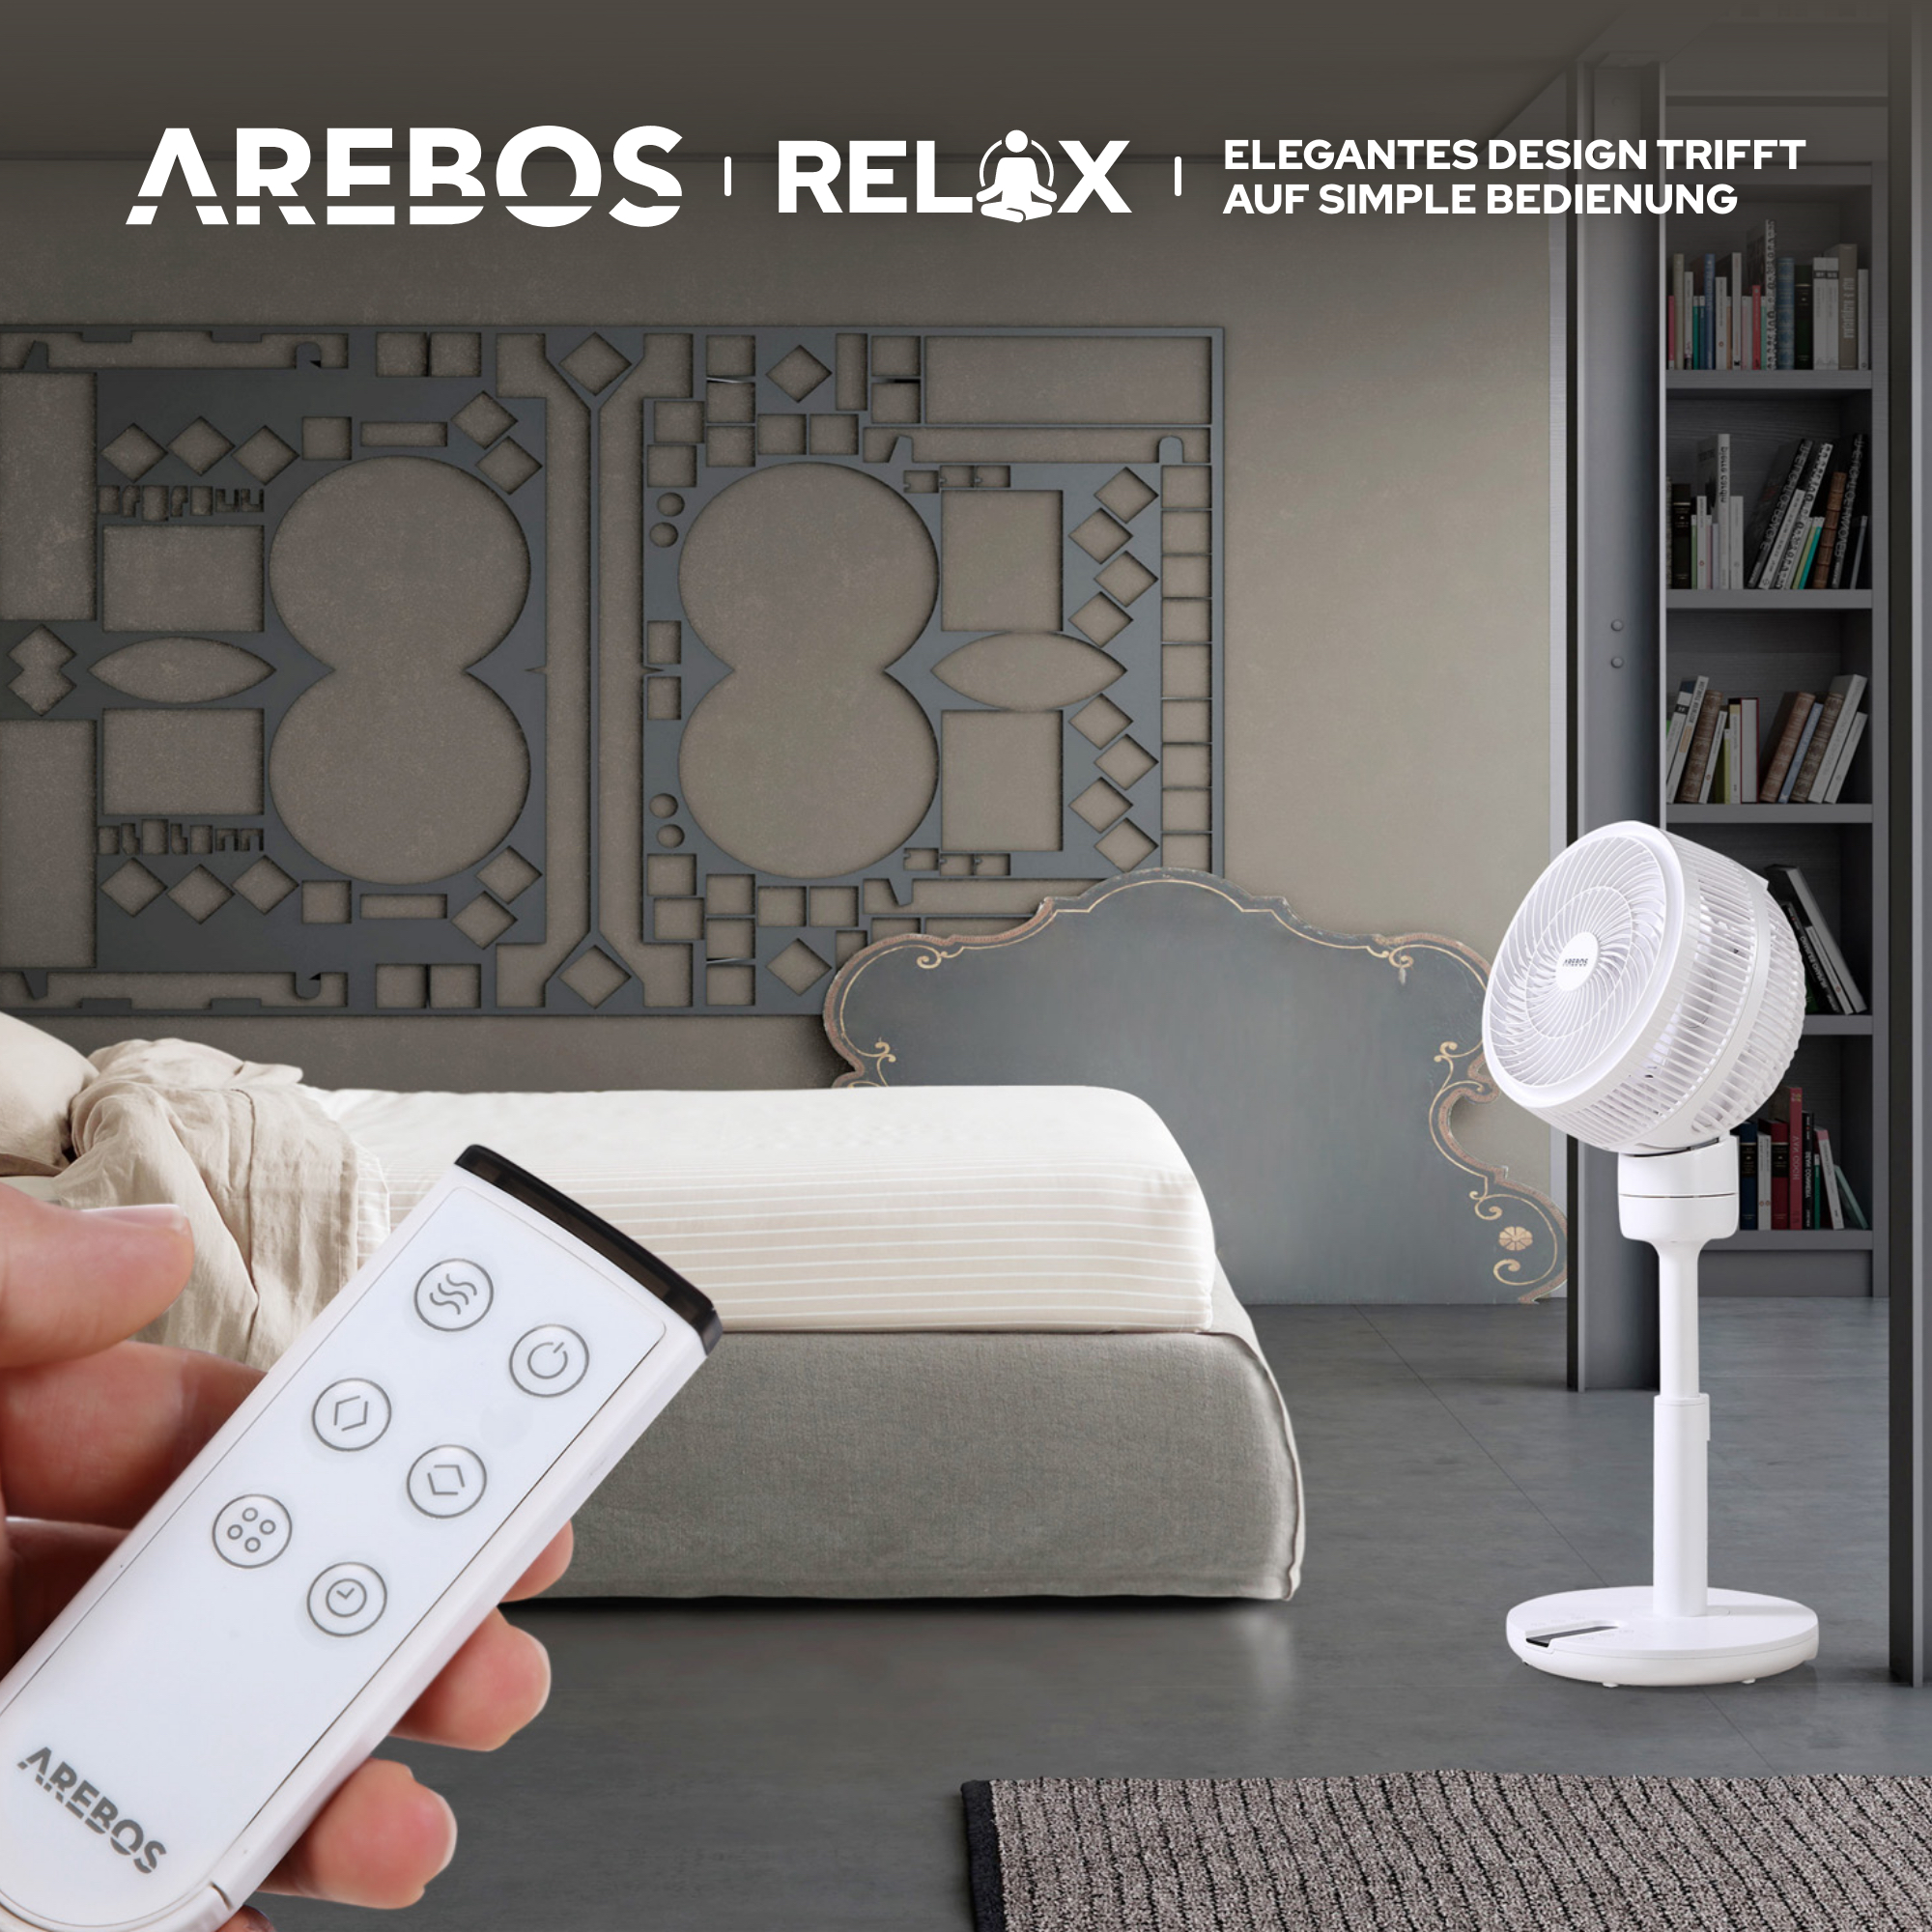 AREBOS weiß 55W Luftzirkulator Bodenventilator Watt) Fernbedienung mit (55